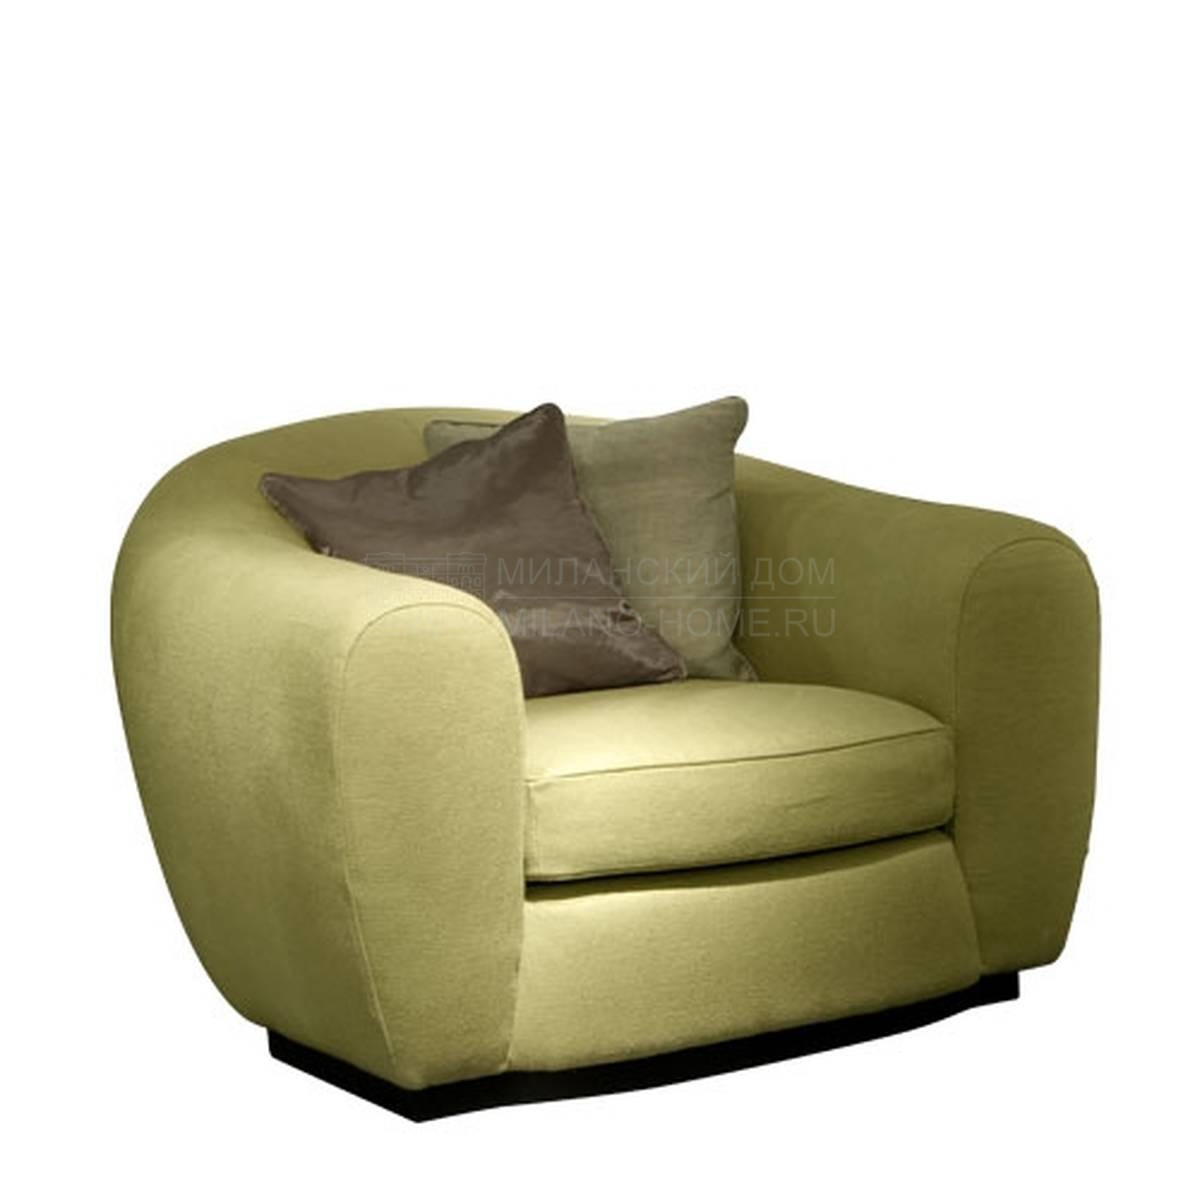 Круглое кресло Tobia / armchair из Италии фабрики SOFTHOUSE